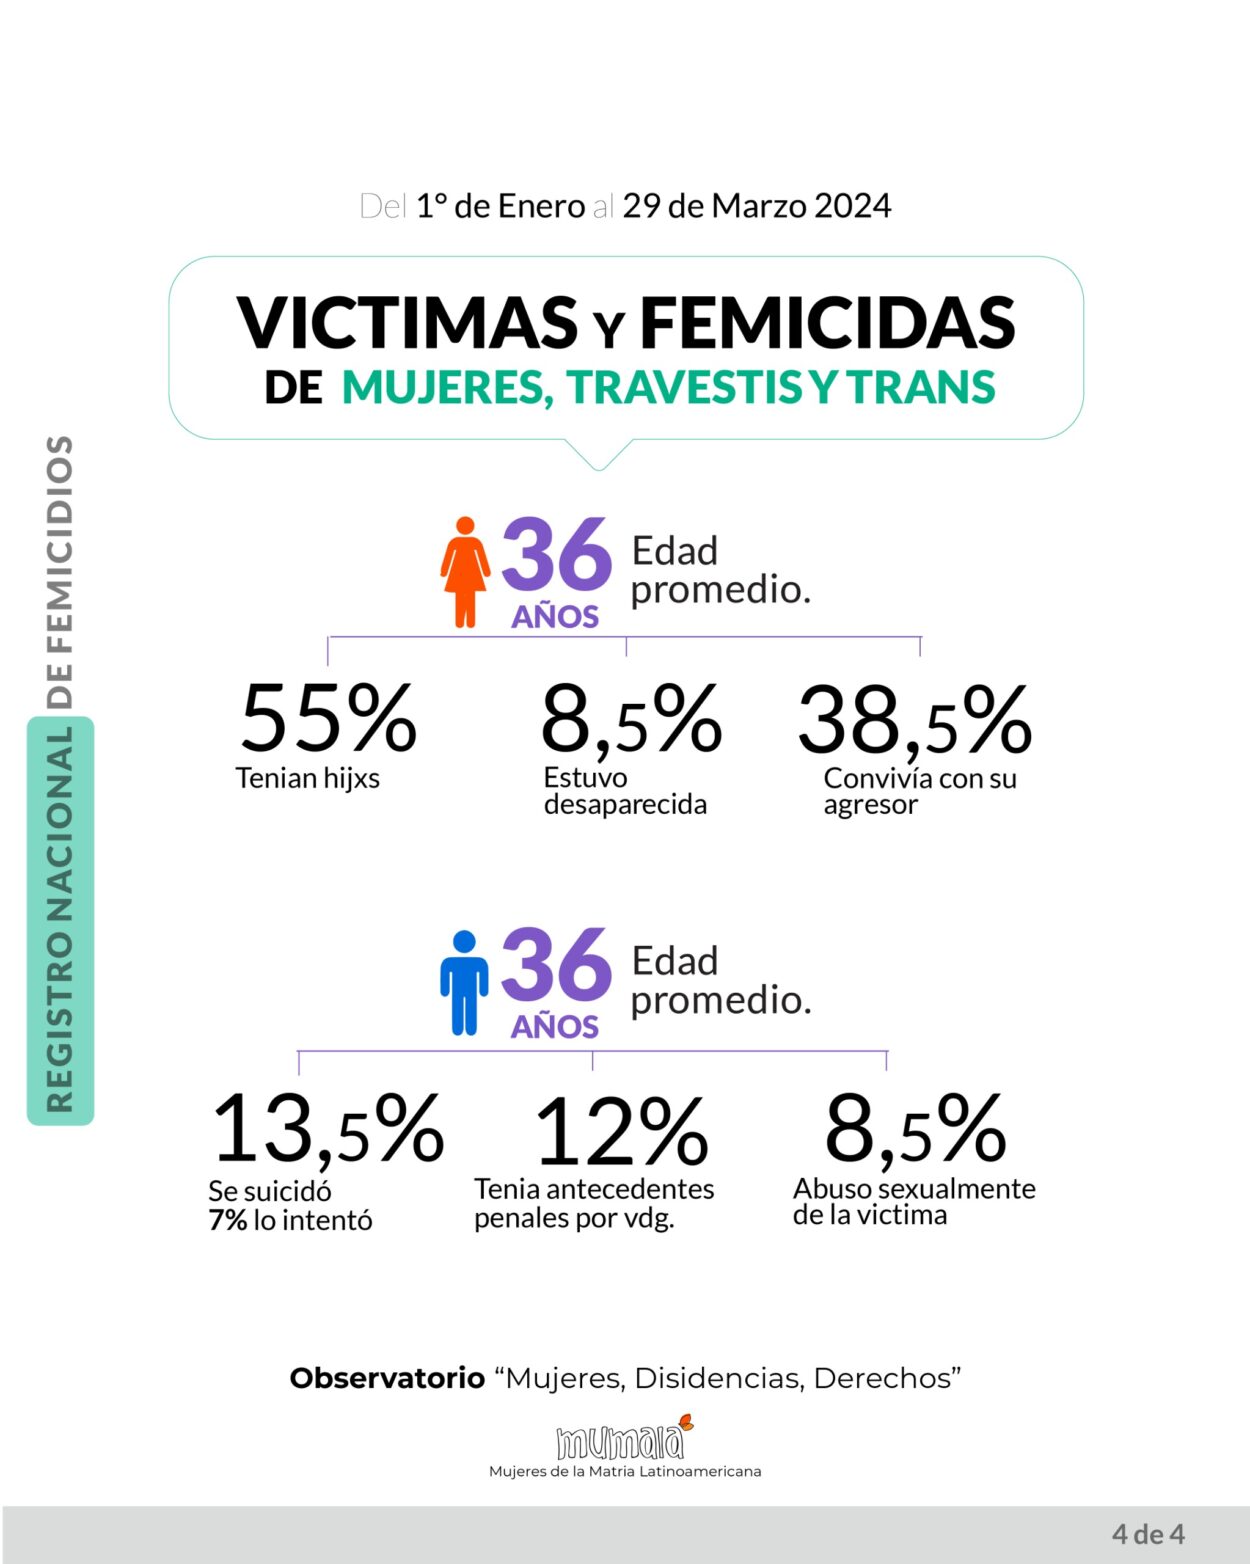 El Observatorio MuMaLa denunció que en 3 meses se han registrado 62 feminicidios, uno cada 35 horas imagen-75